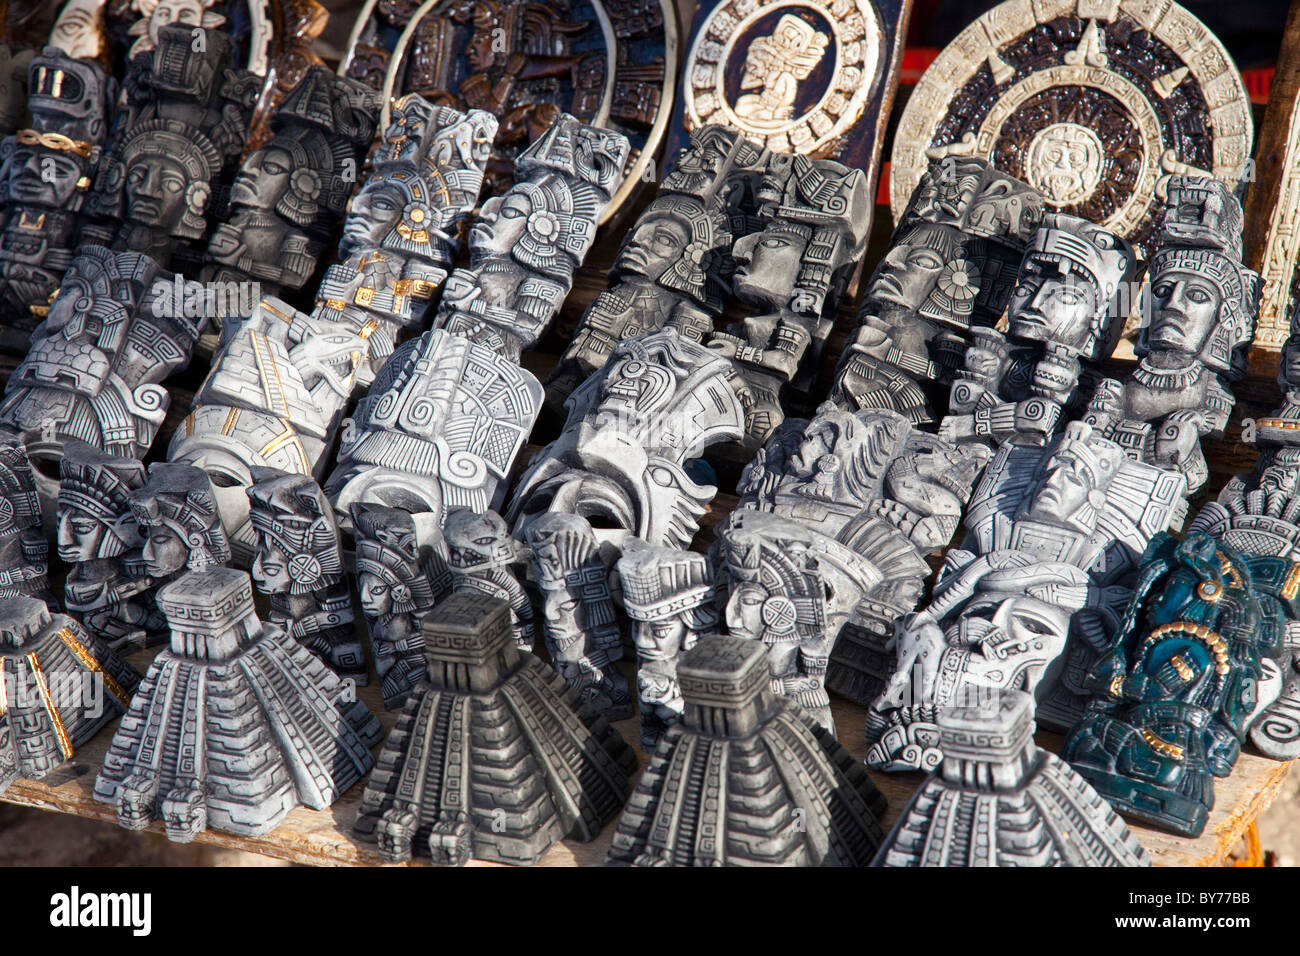 Mayan souvenirs, Chichen Itza, Mexico Stock Photo